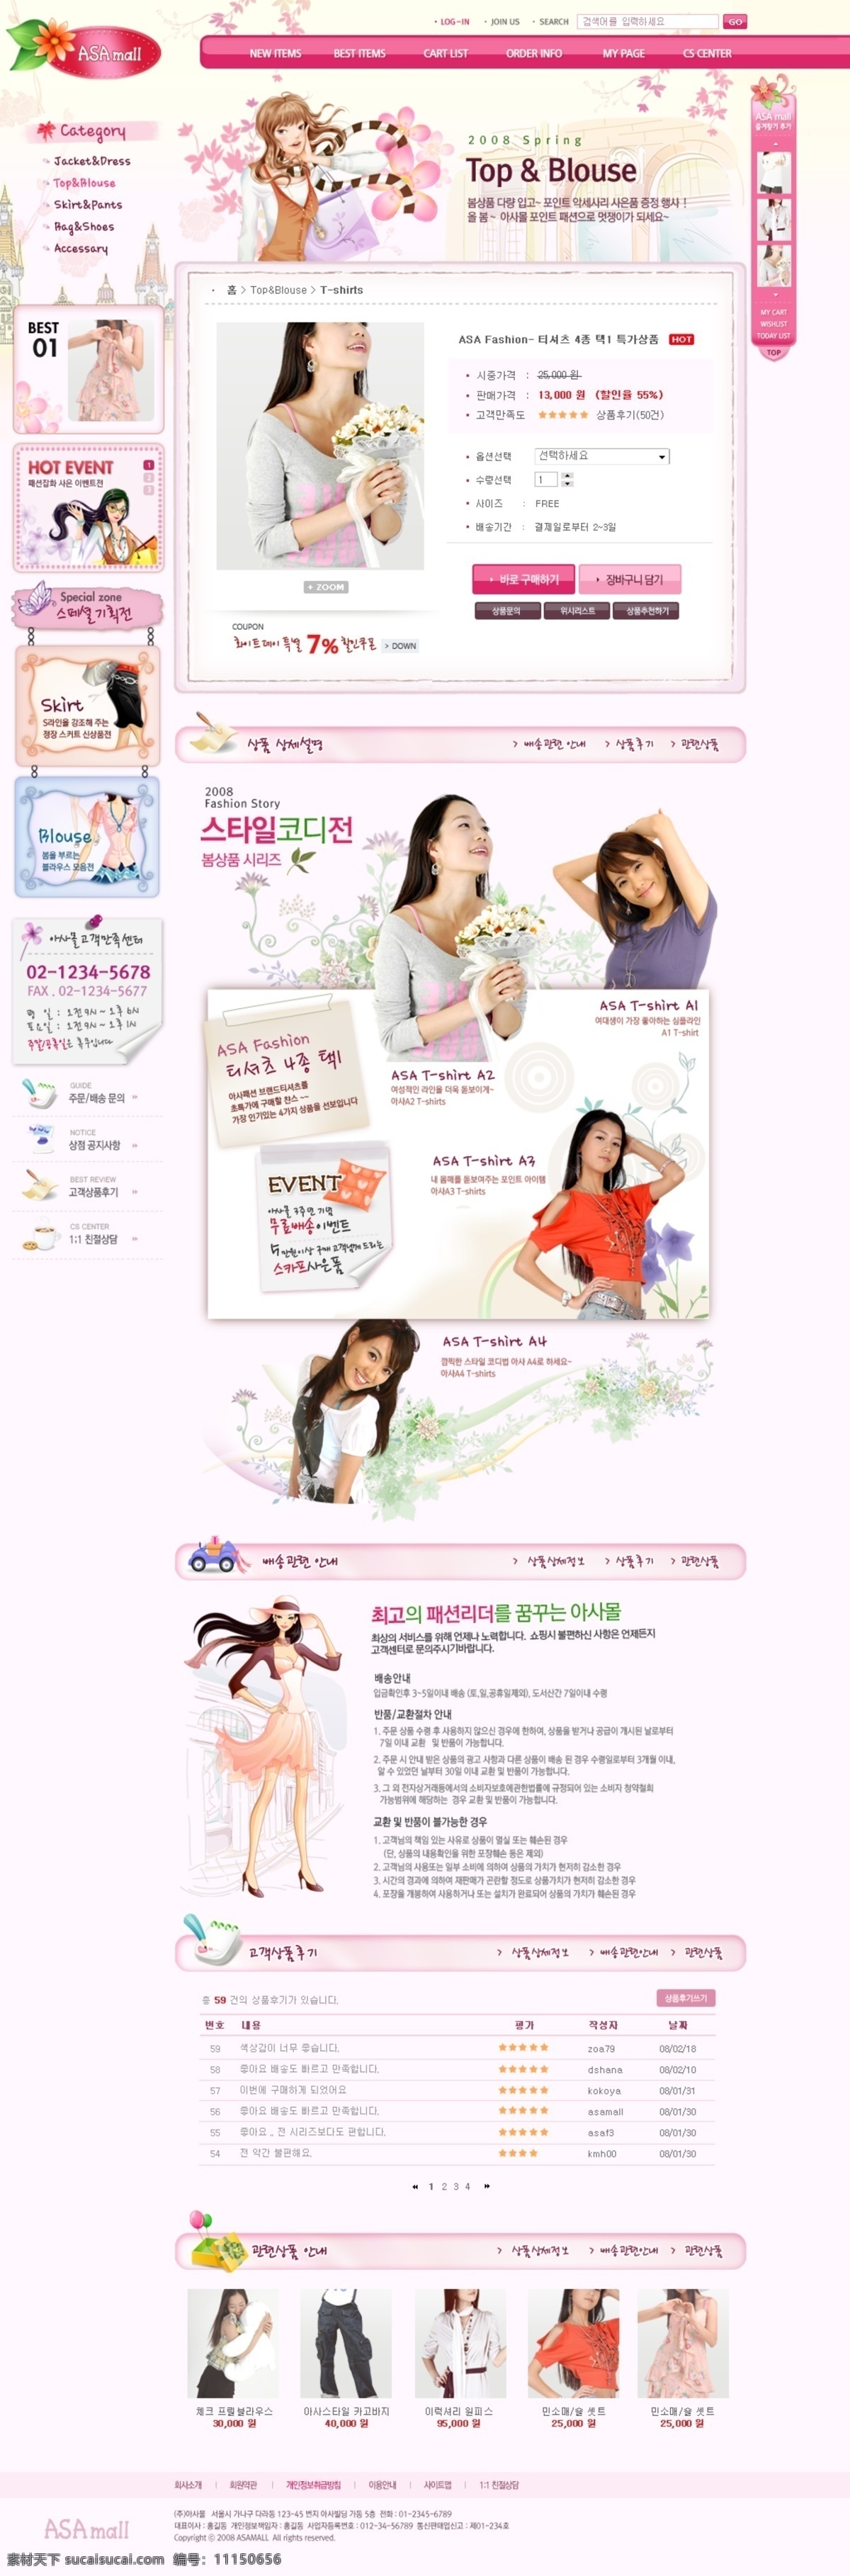 粉红 少女 春夏 服饰 网页模板 网页素材